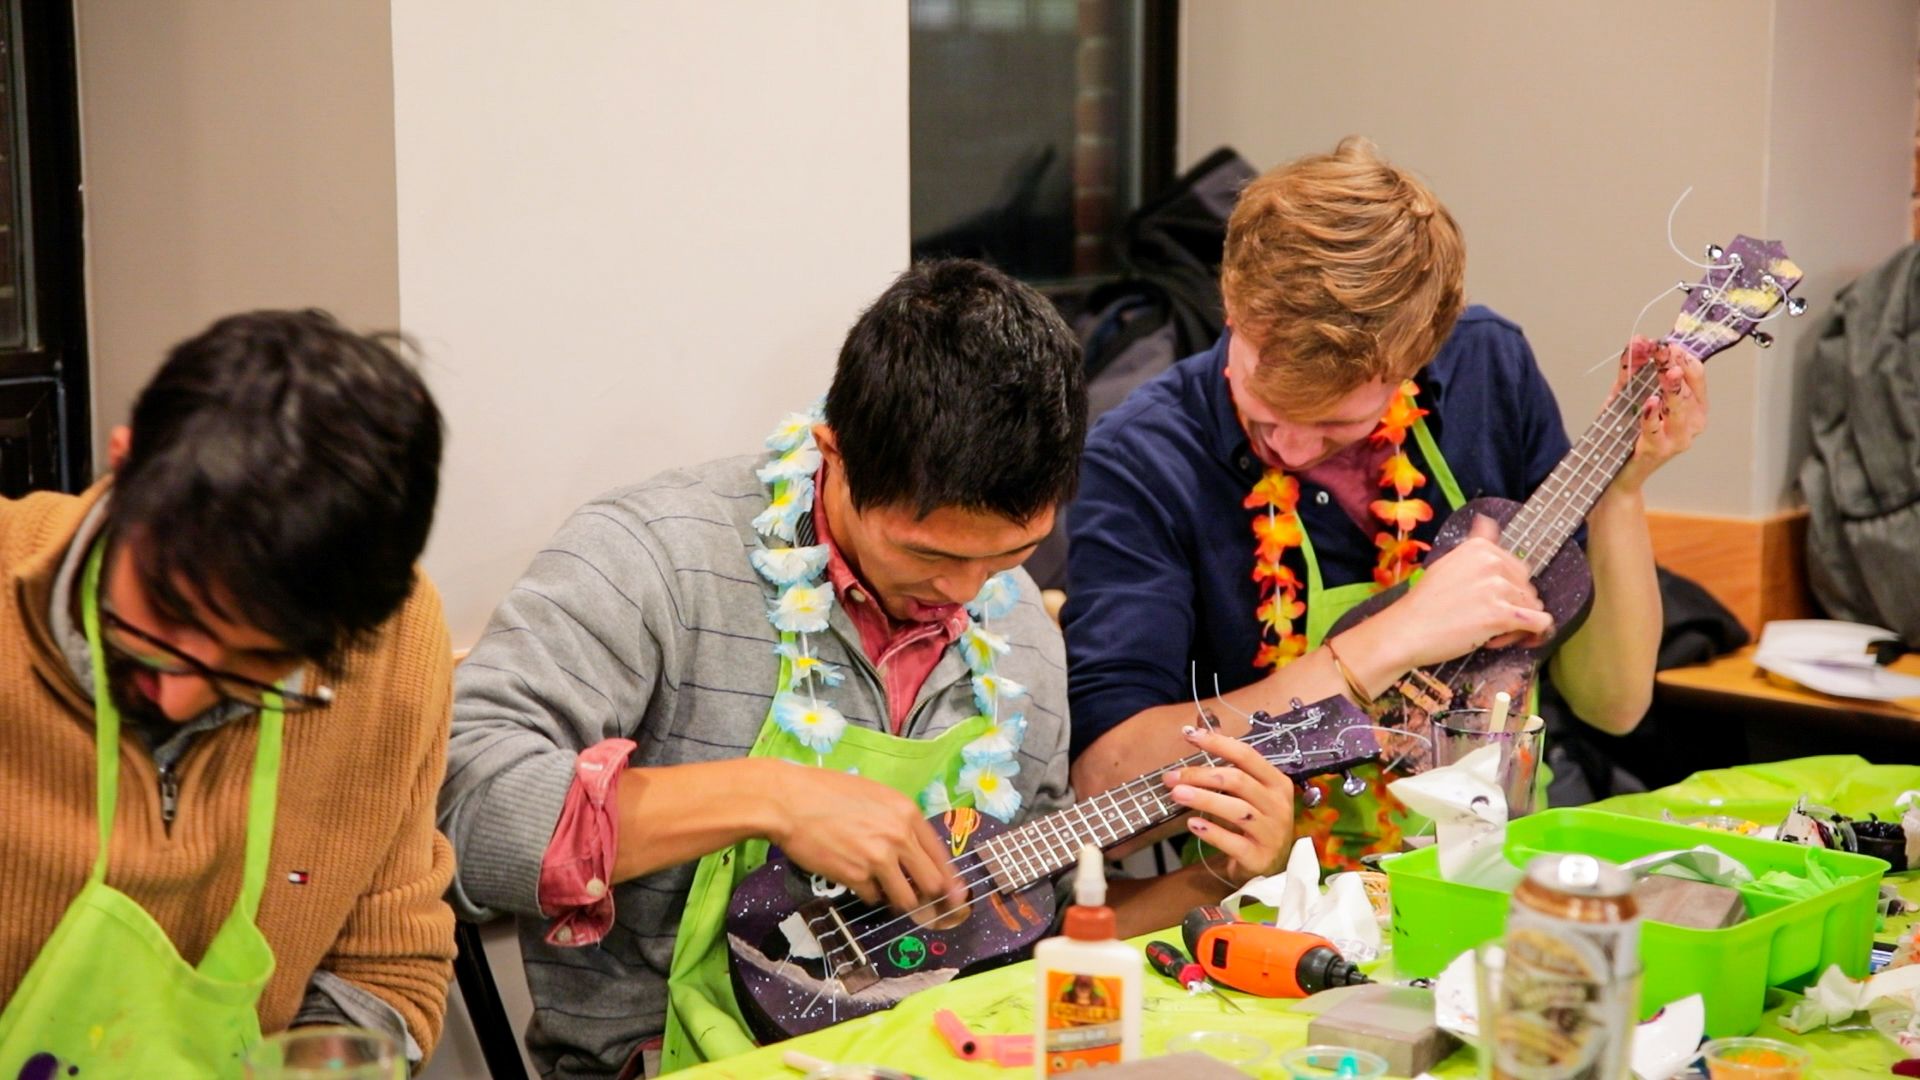 Three men playing painted ukuleles at Yaymaker Create a Ukulele event